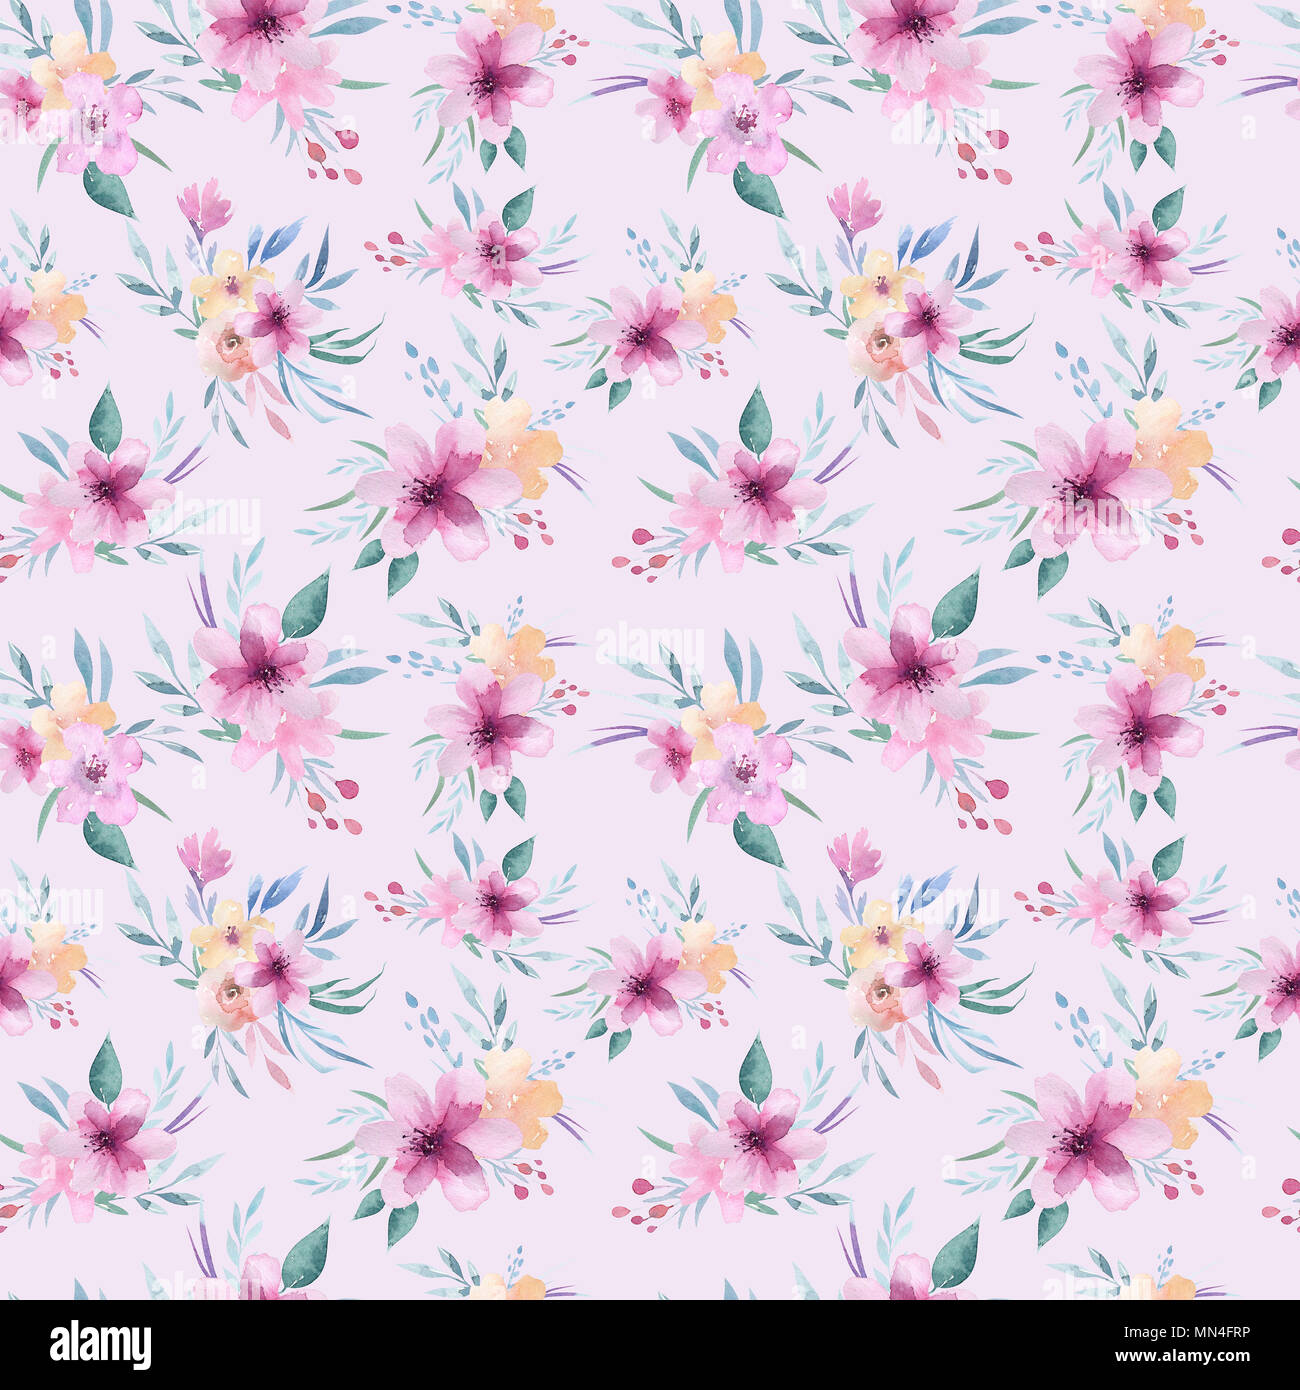 Aquarell floralen Muster. Nahtlose Muster mit lila, gold und rosa Blumenstrauß auf weißem Hintergrund. Blumen, Rosen, Pfingstrosen und Blätter Stockfoto